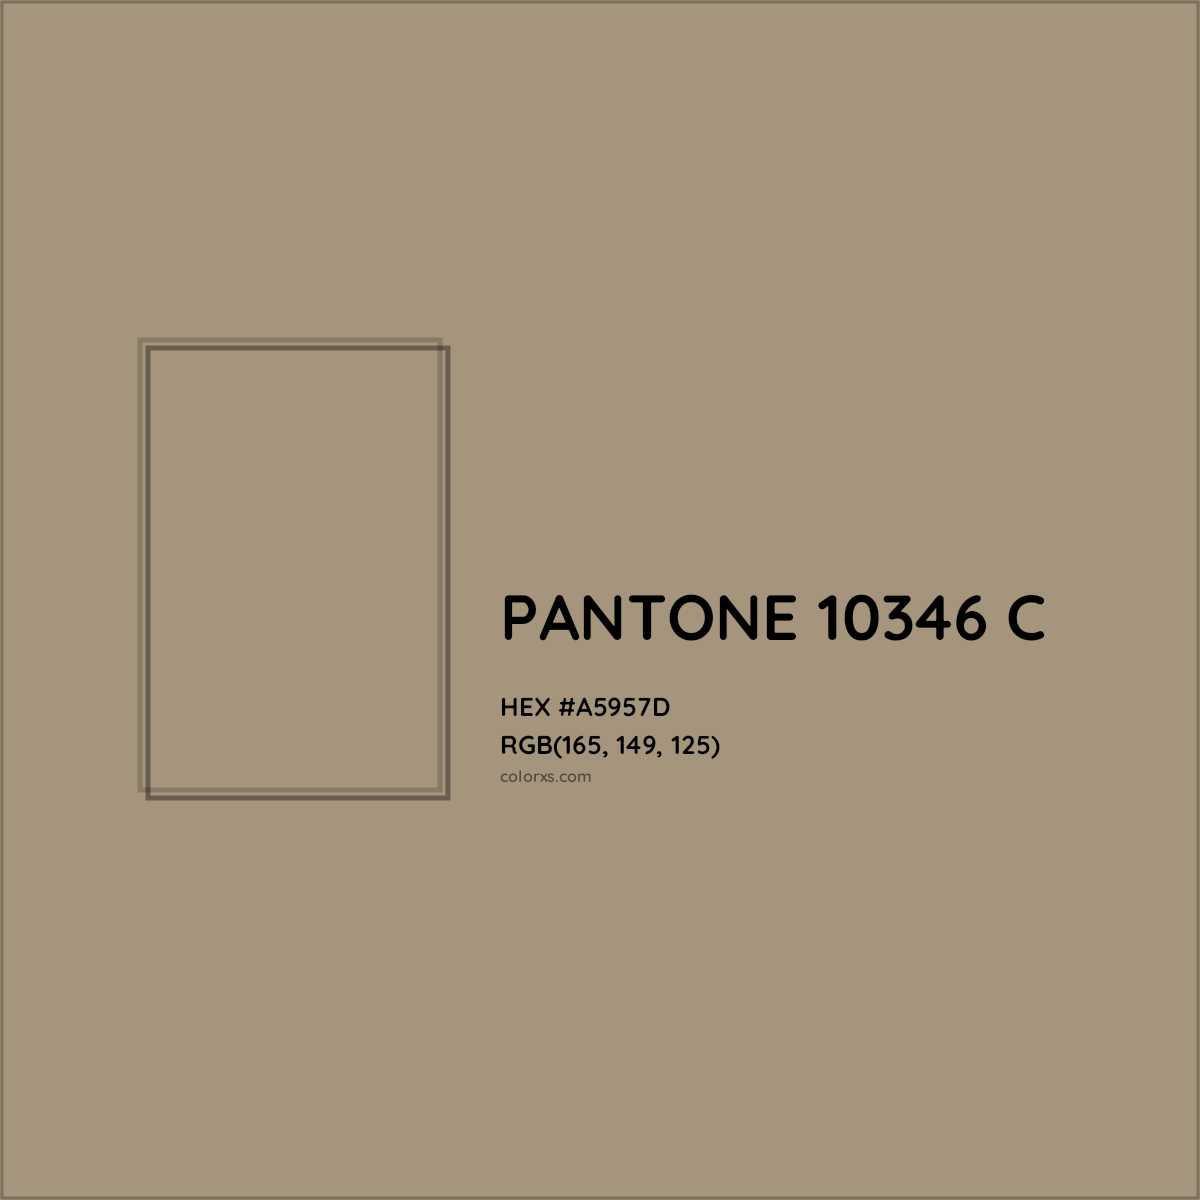 HEX #A5957D PANTONE 10346 C CMS Pantone PMS - Color Code